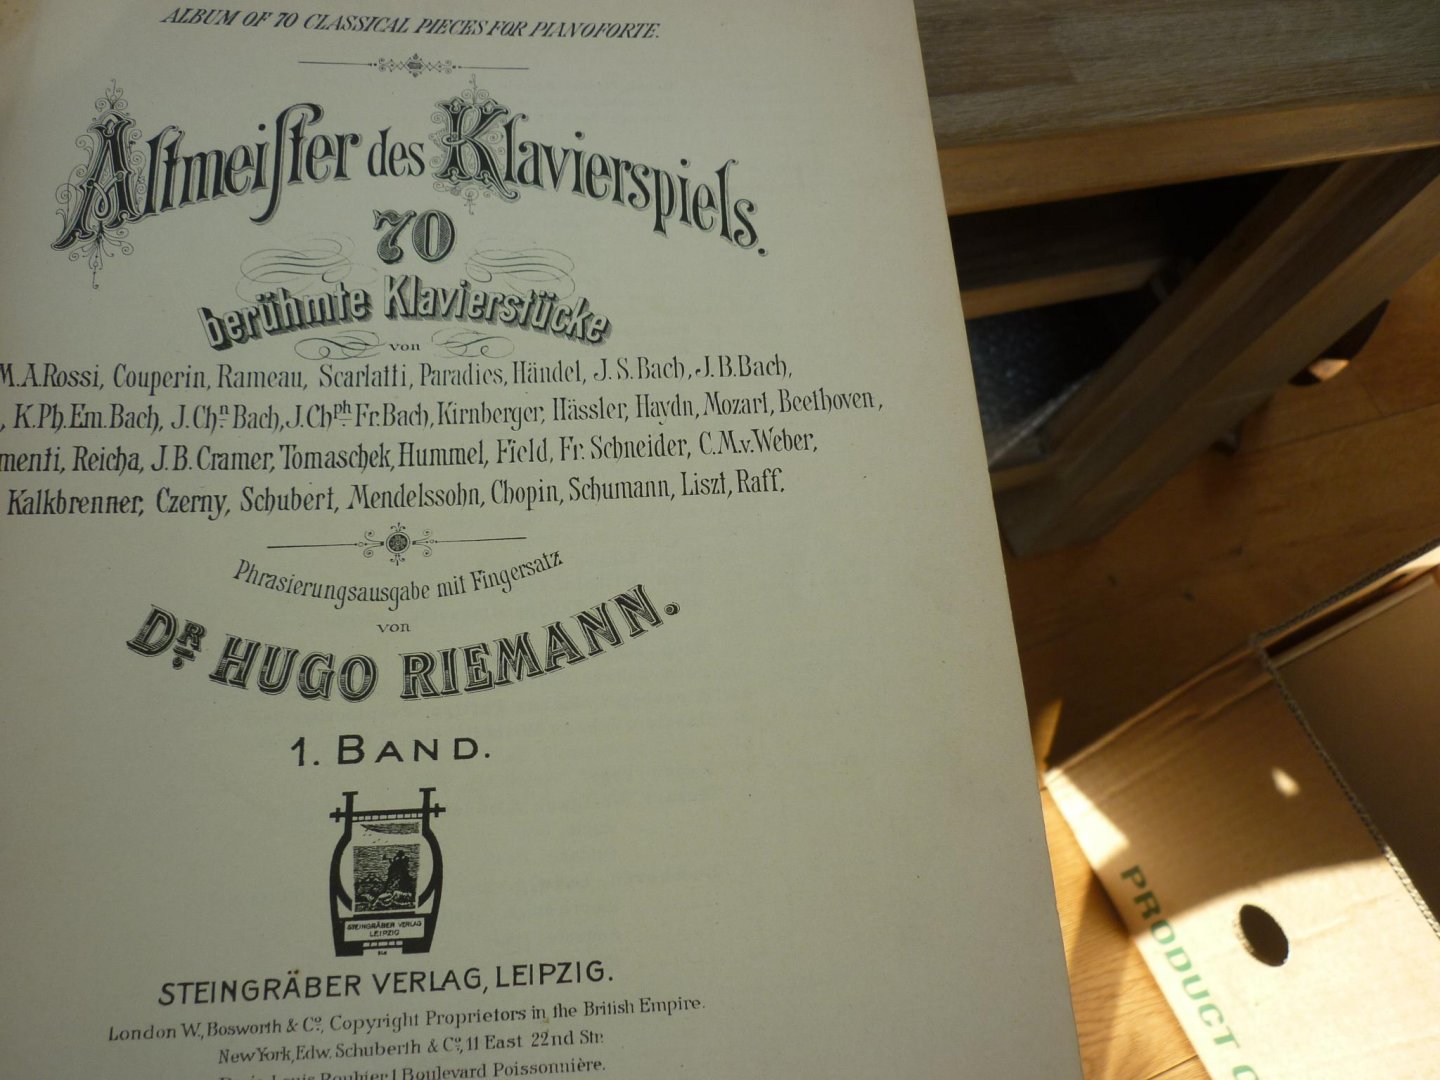 Div. Componisten - Altmeister Des Klavierspiels - Volume 1; 70 beruhmte Klavierstucke (Phrasierungsausgabe mit Fingersatz von Hugo Riemann)